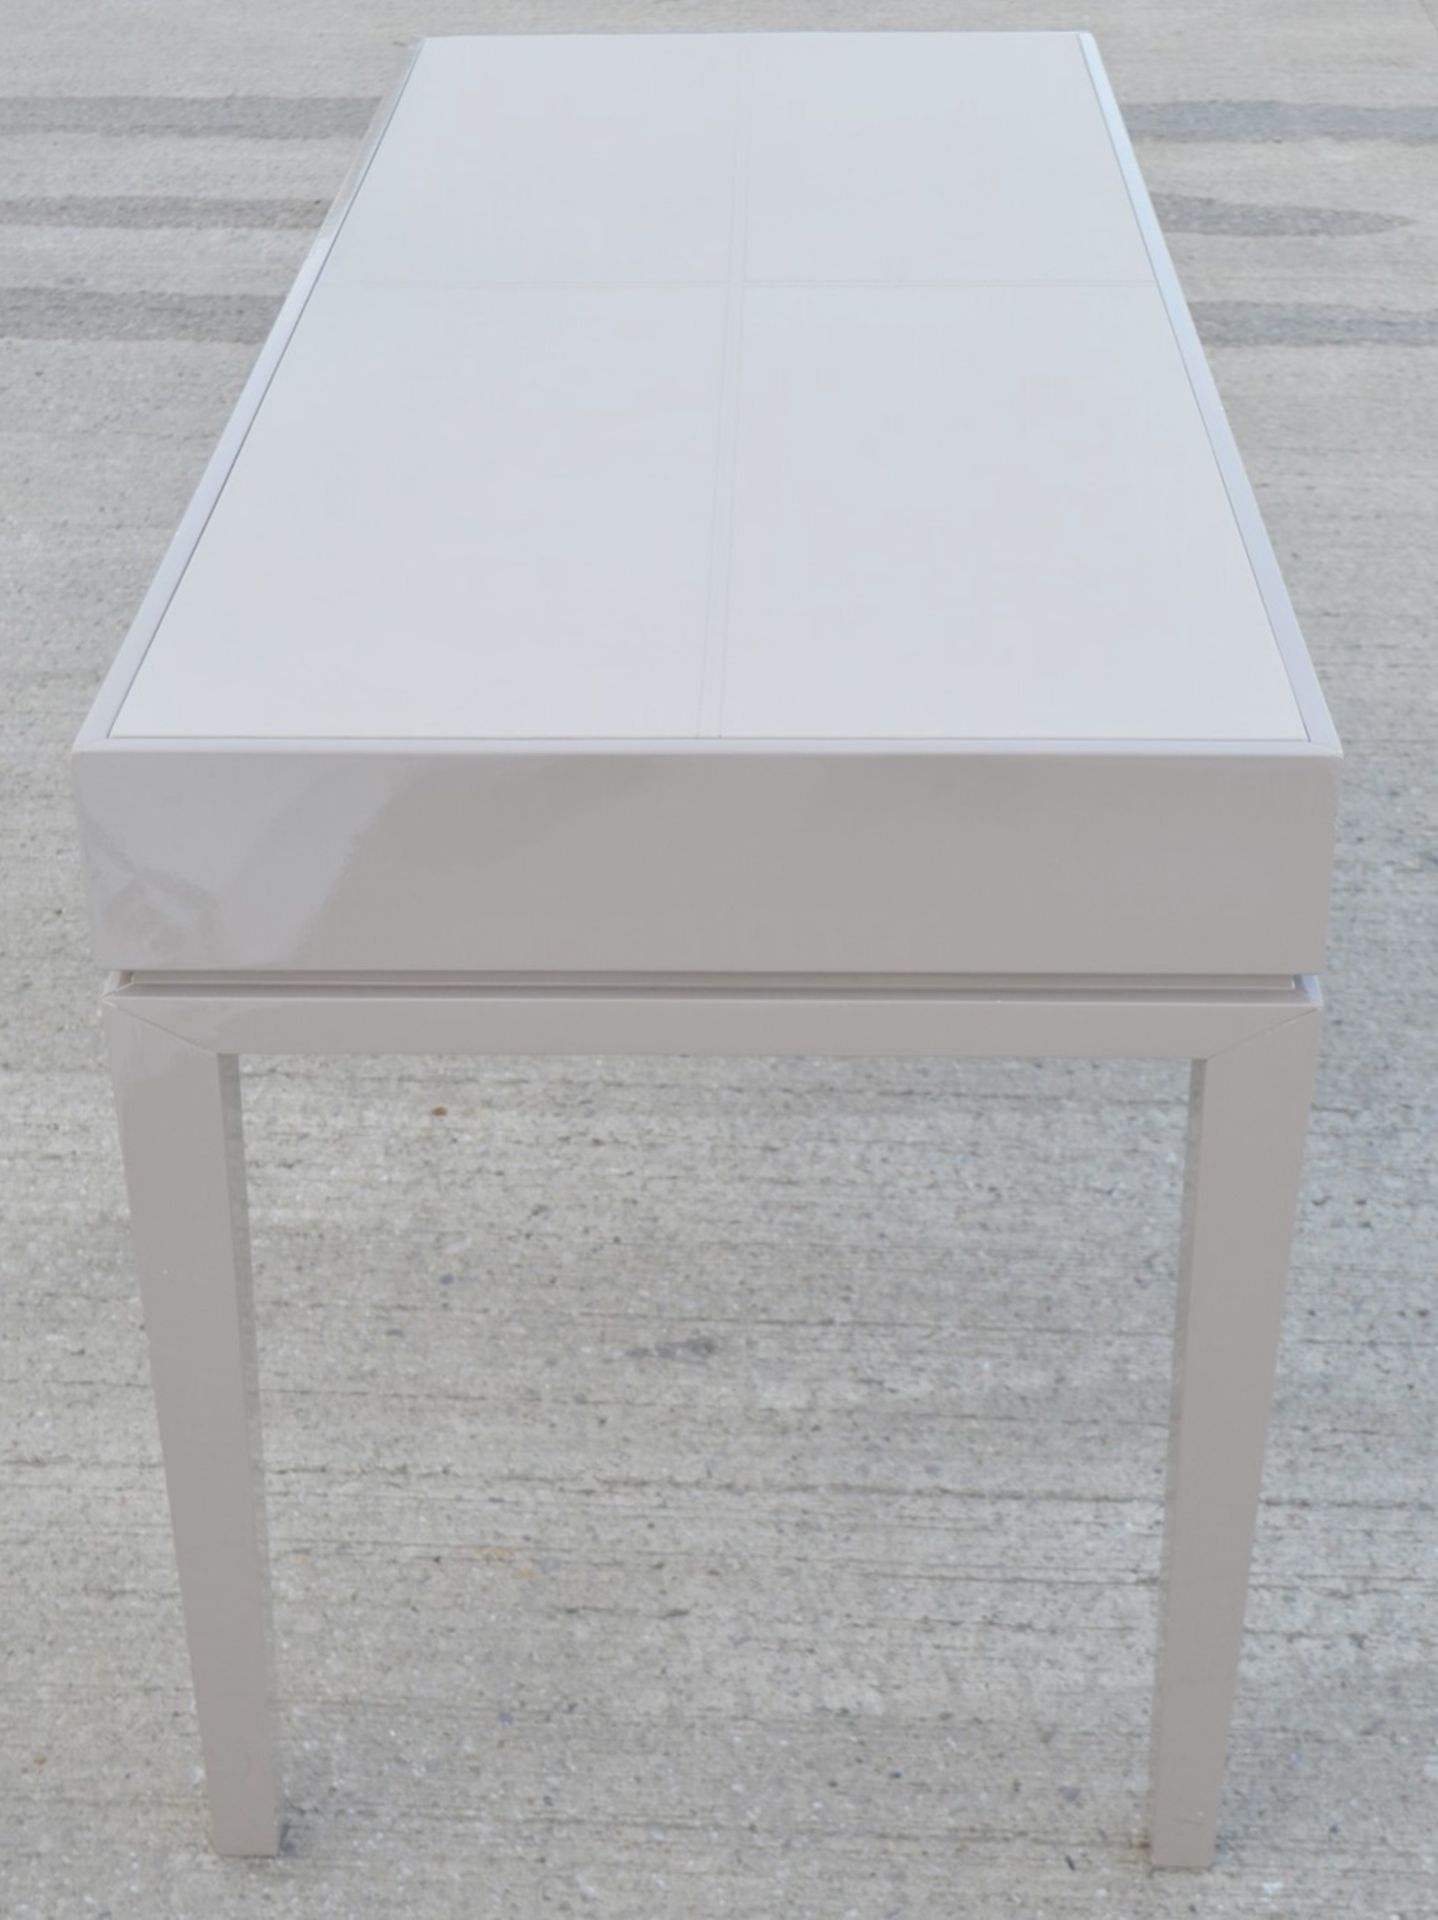 1 x FRATO 'Buzios' Designer Desk - Made In Italy - 160 x D65 x H78cm - Original Price £2,759 - Image 2 of 13